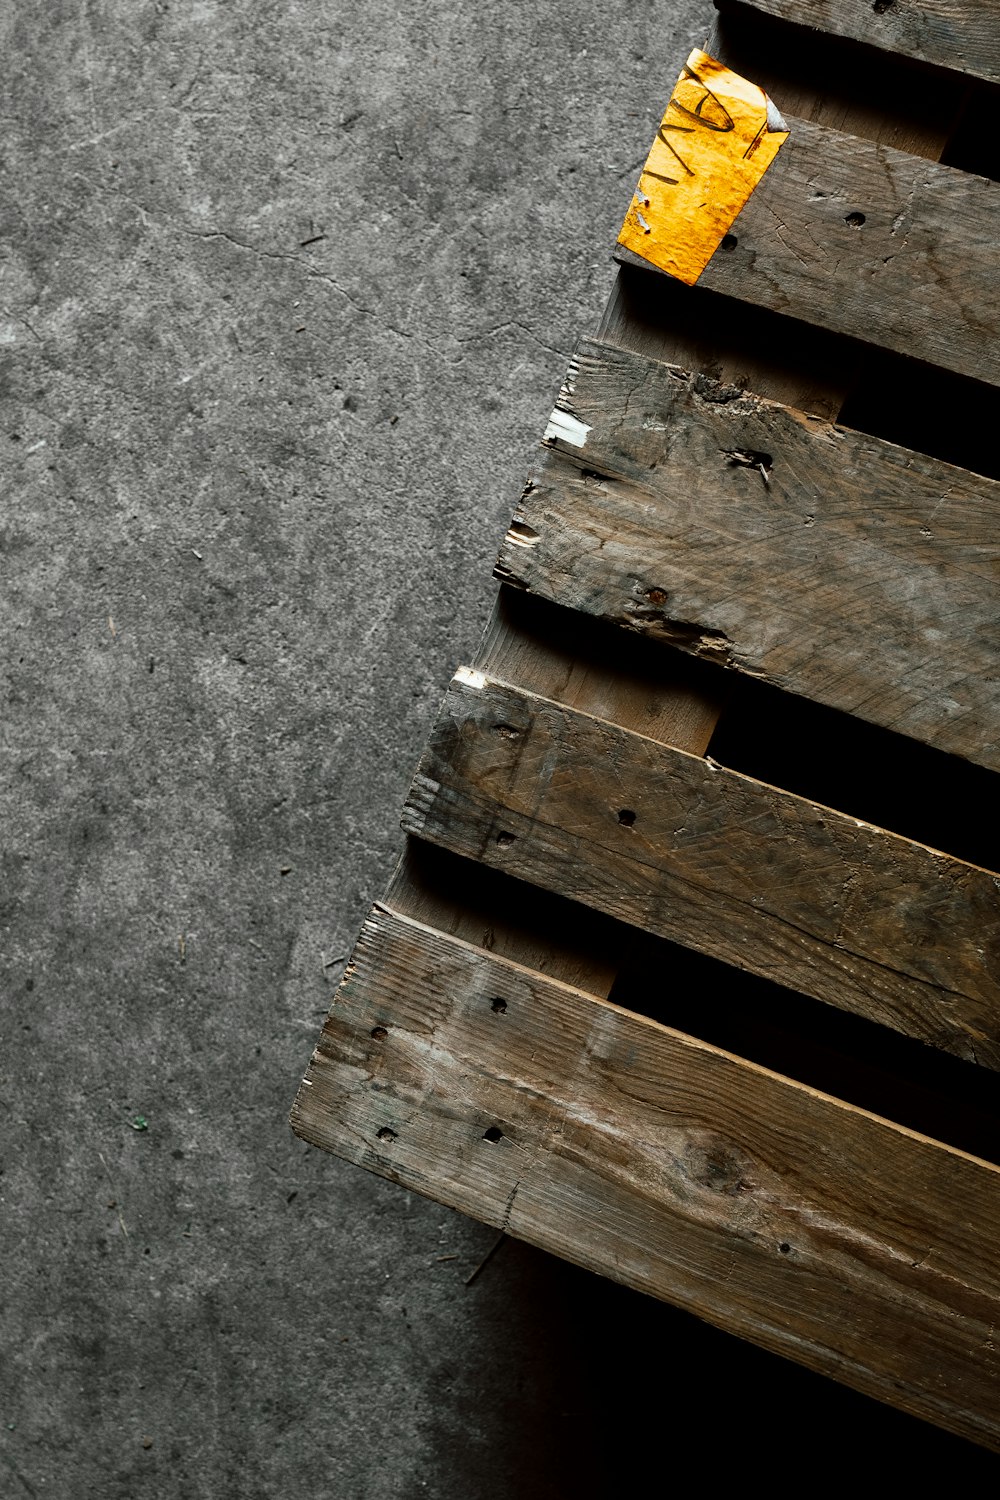 회색 콘크리트 바닥에 갈색 나무 팔레트